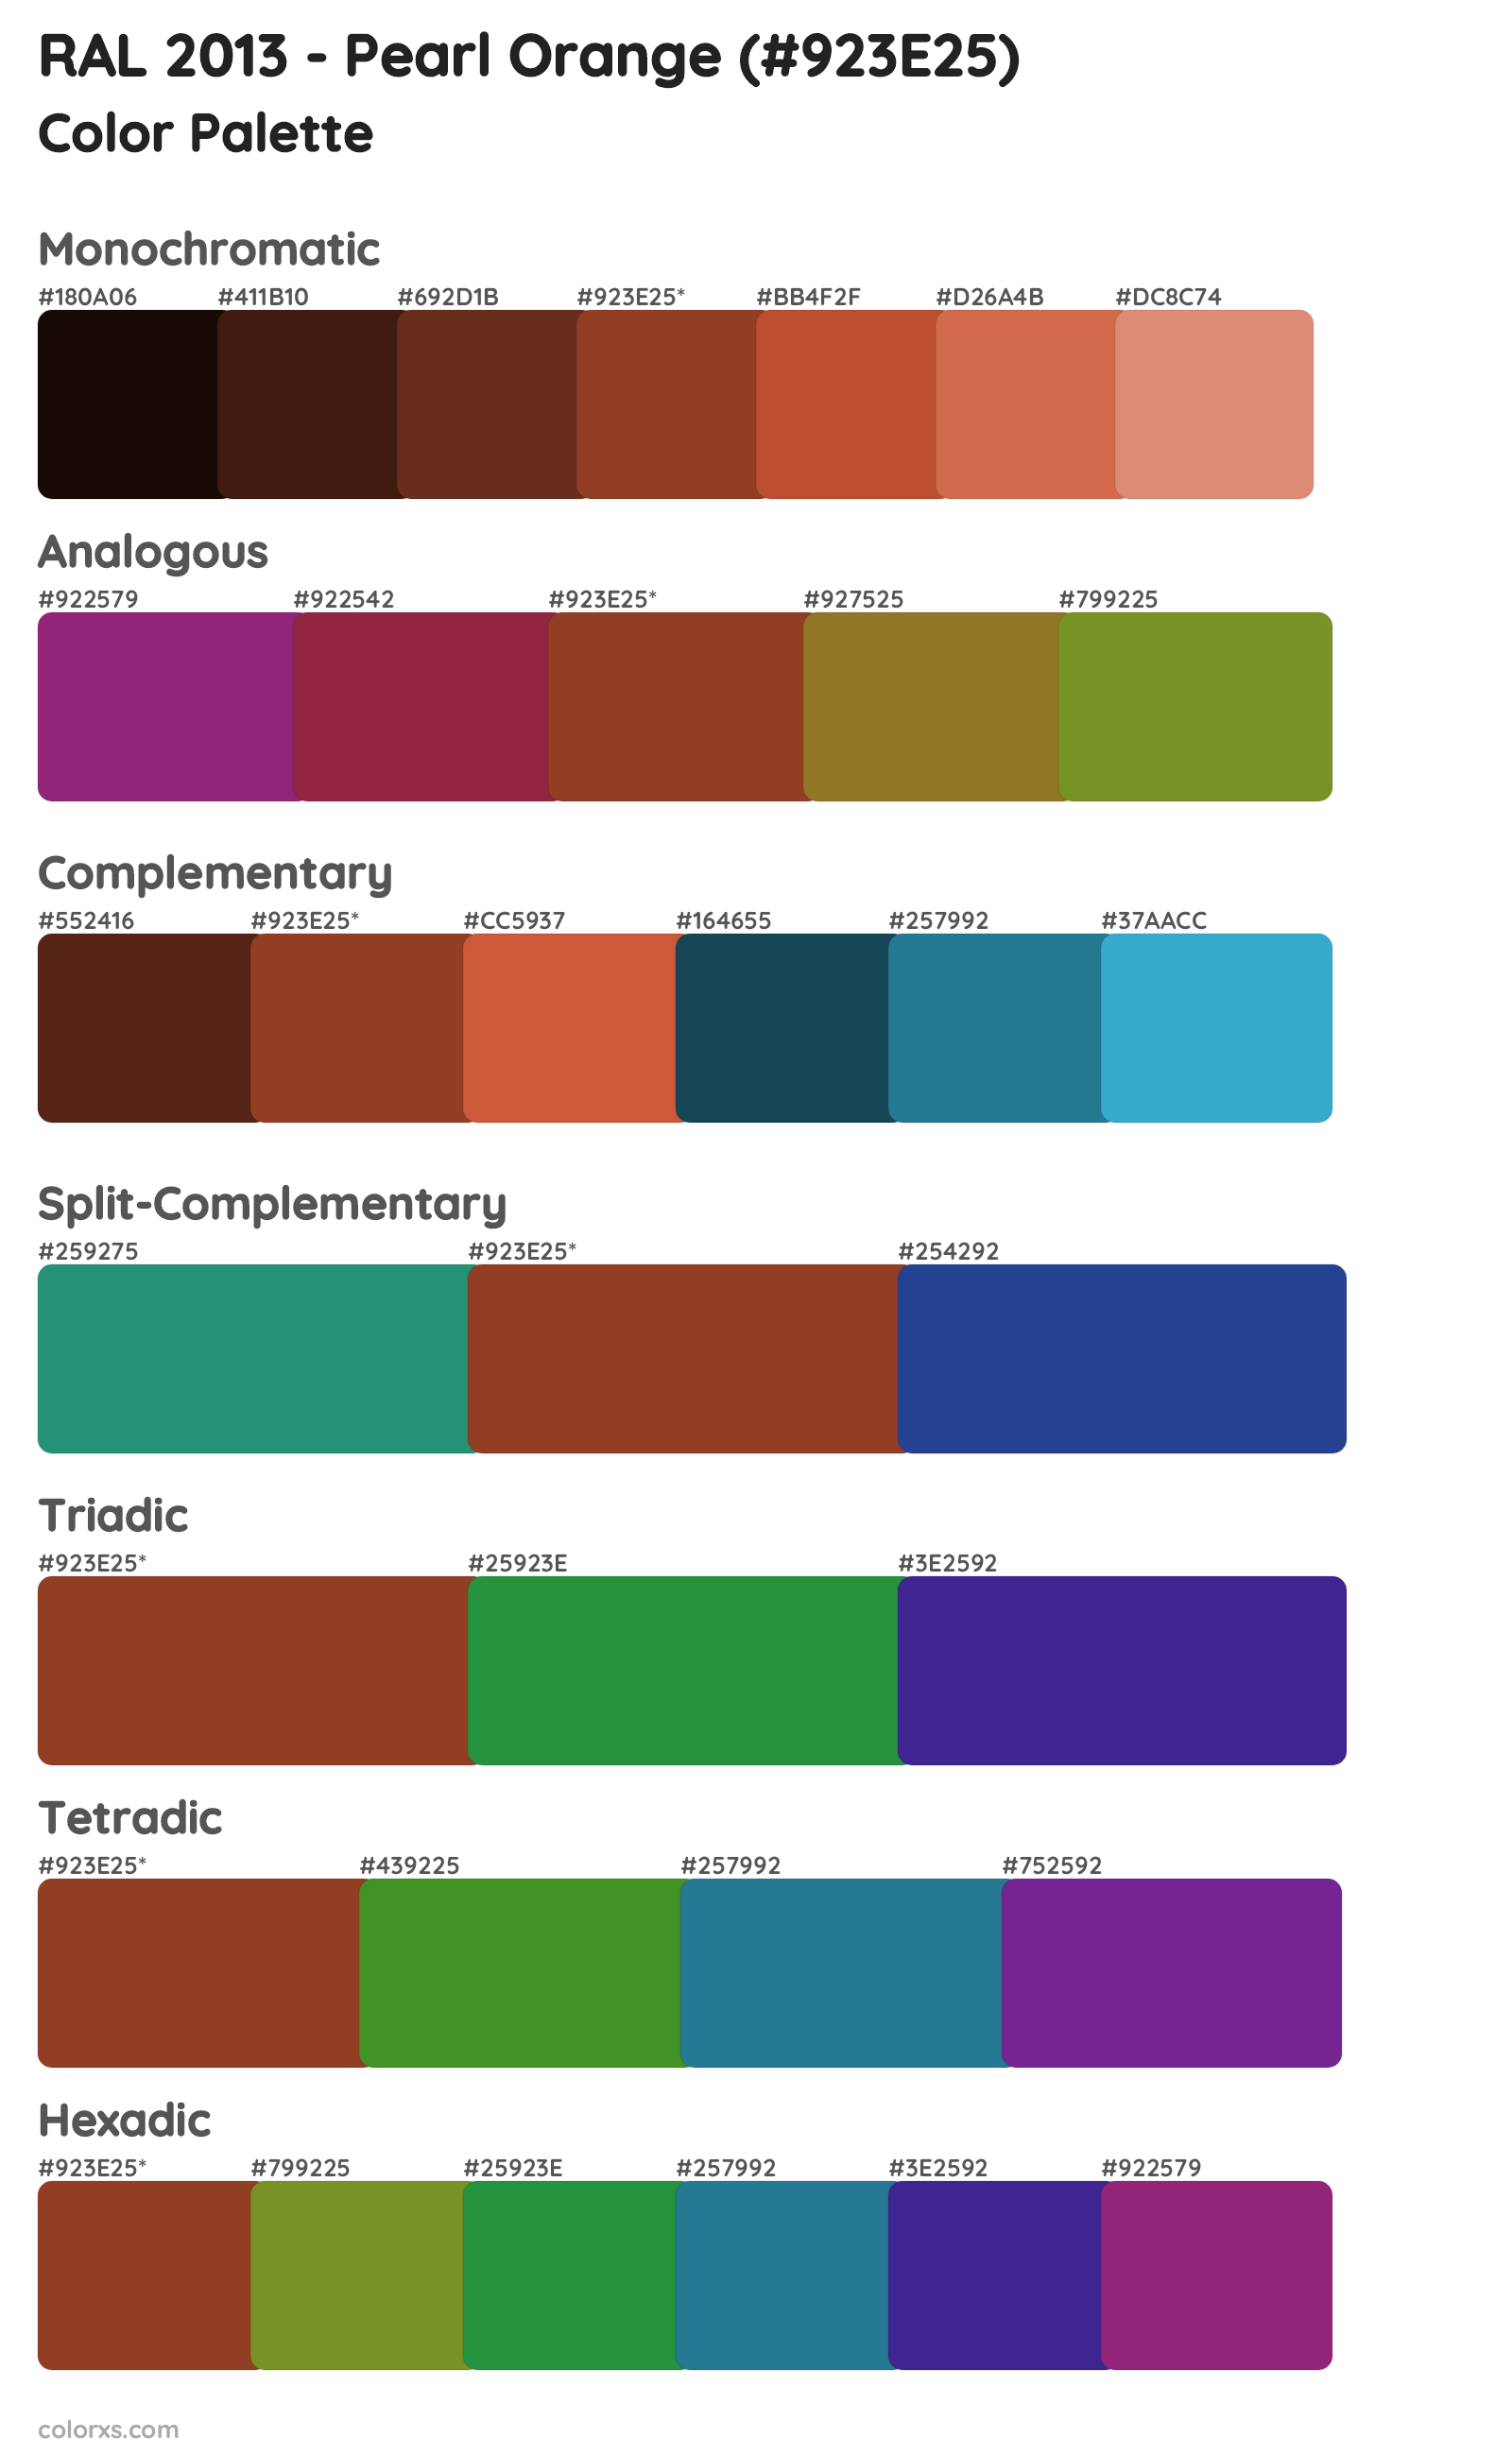 RAL 2013 - Pearl Orange Color Scheme Palettes